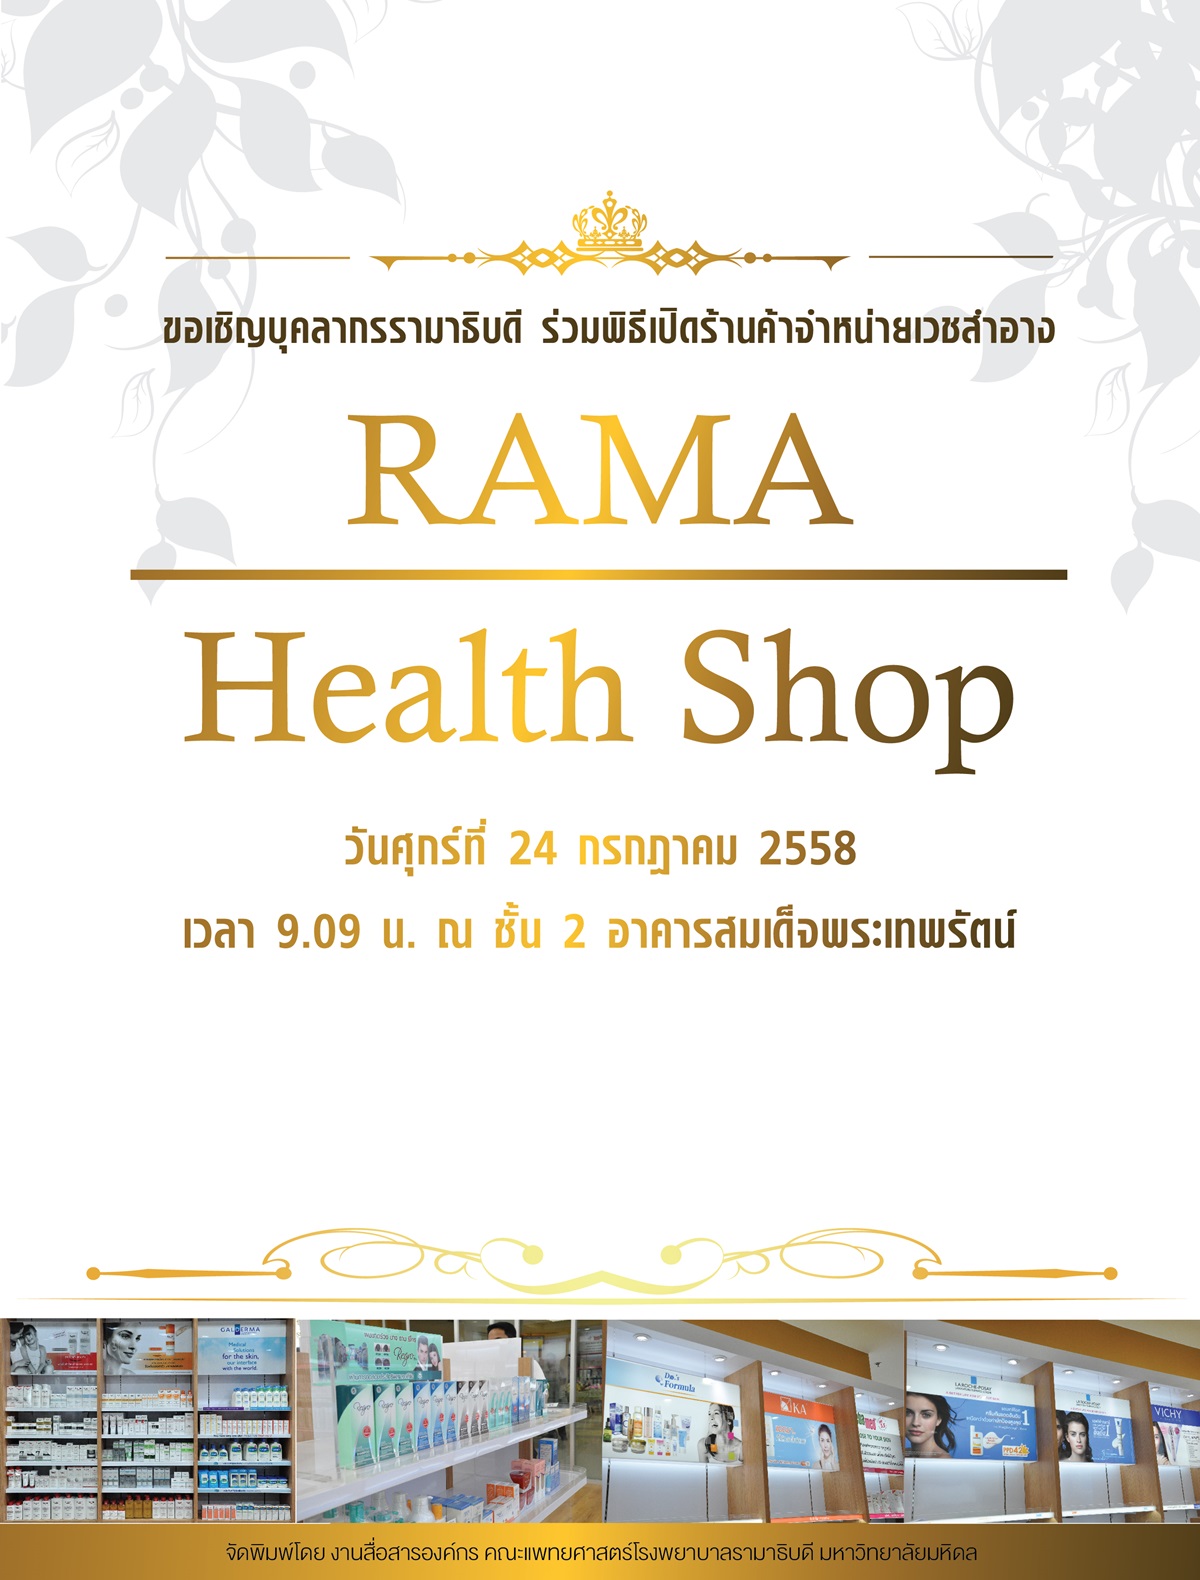 พิธีเปิดร้านค้าจำหน่ายเวชสำอาง “Rama Health Shop”